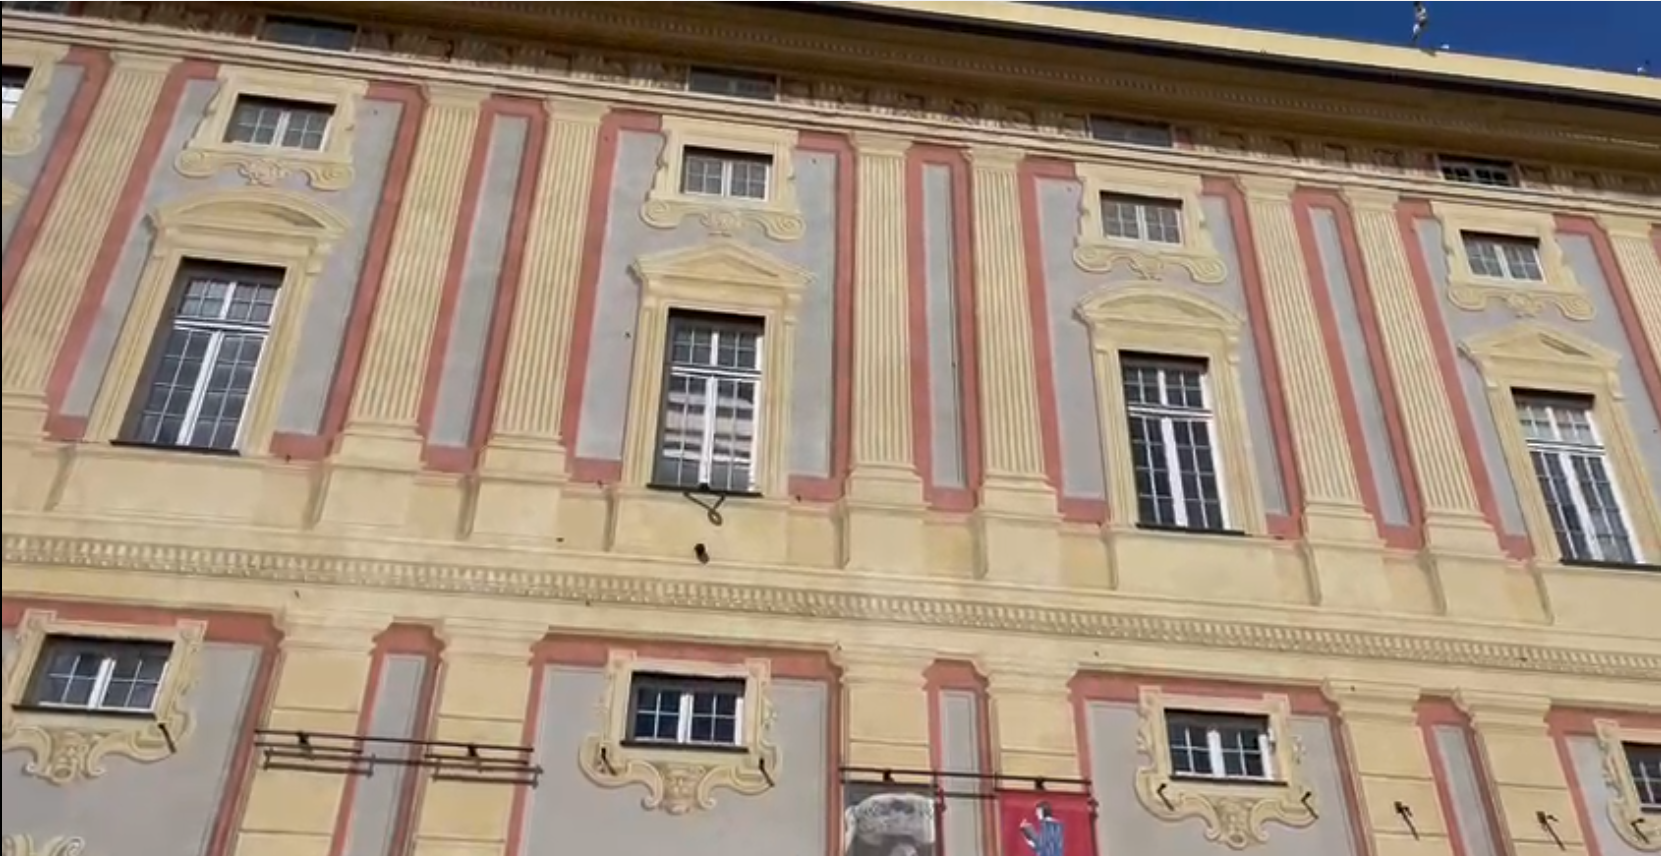 Palazzo Ducale, in consiglio regionale via libera al nuovo cda: Anzalone si astiene